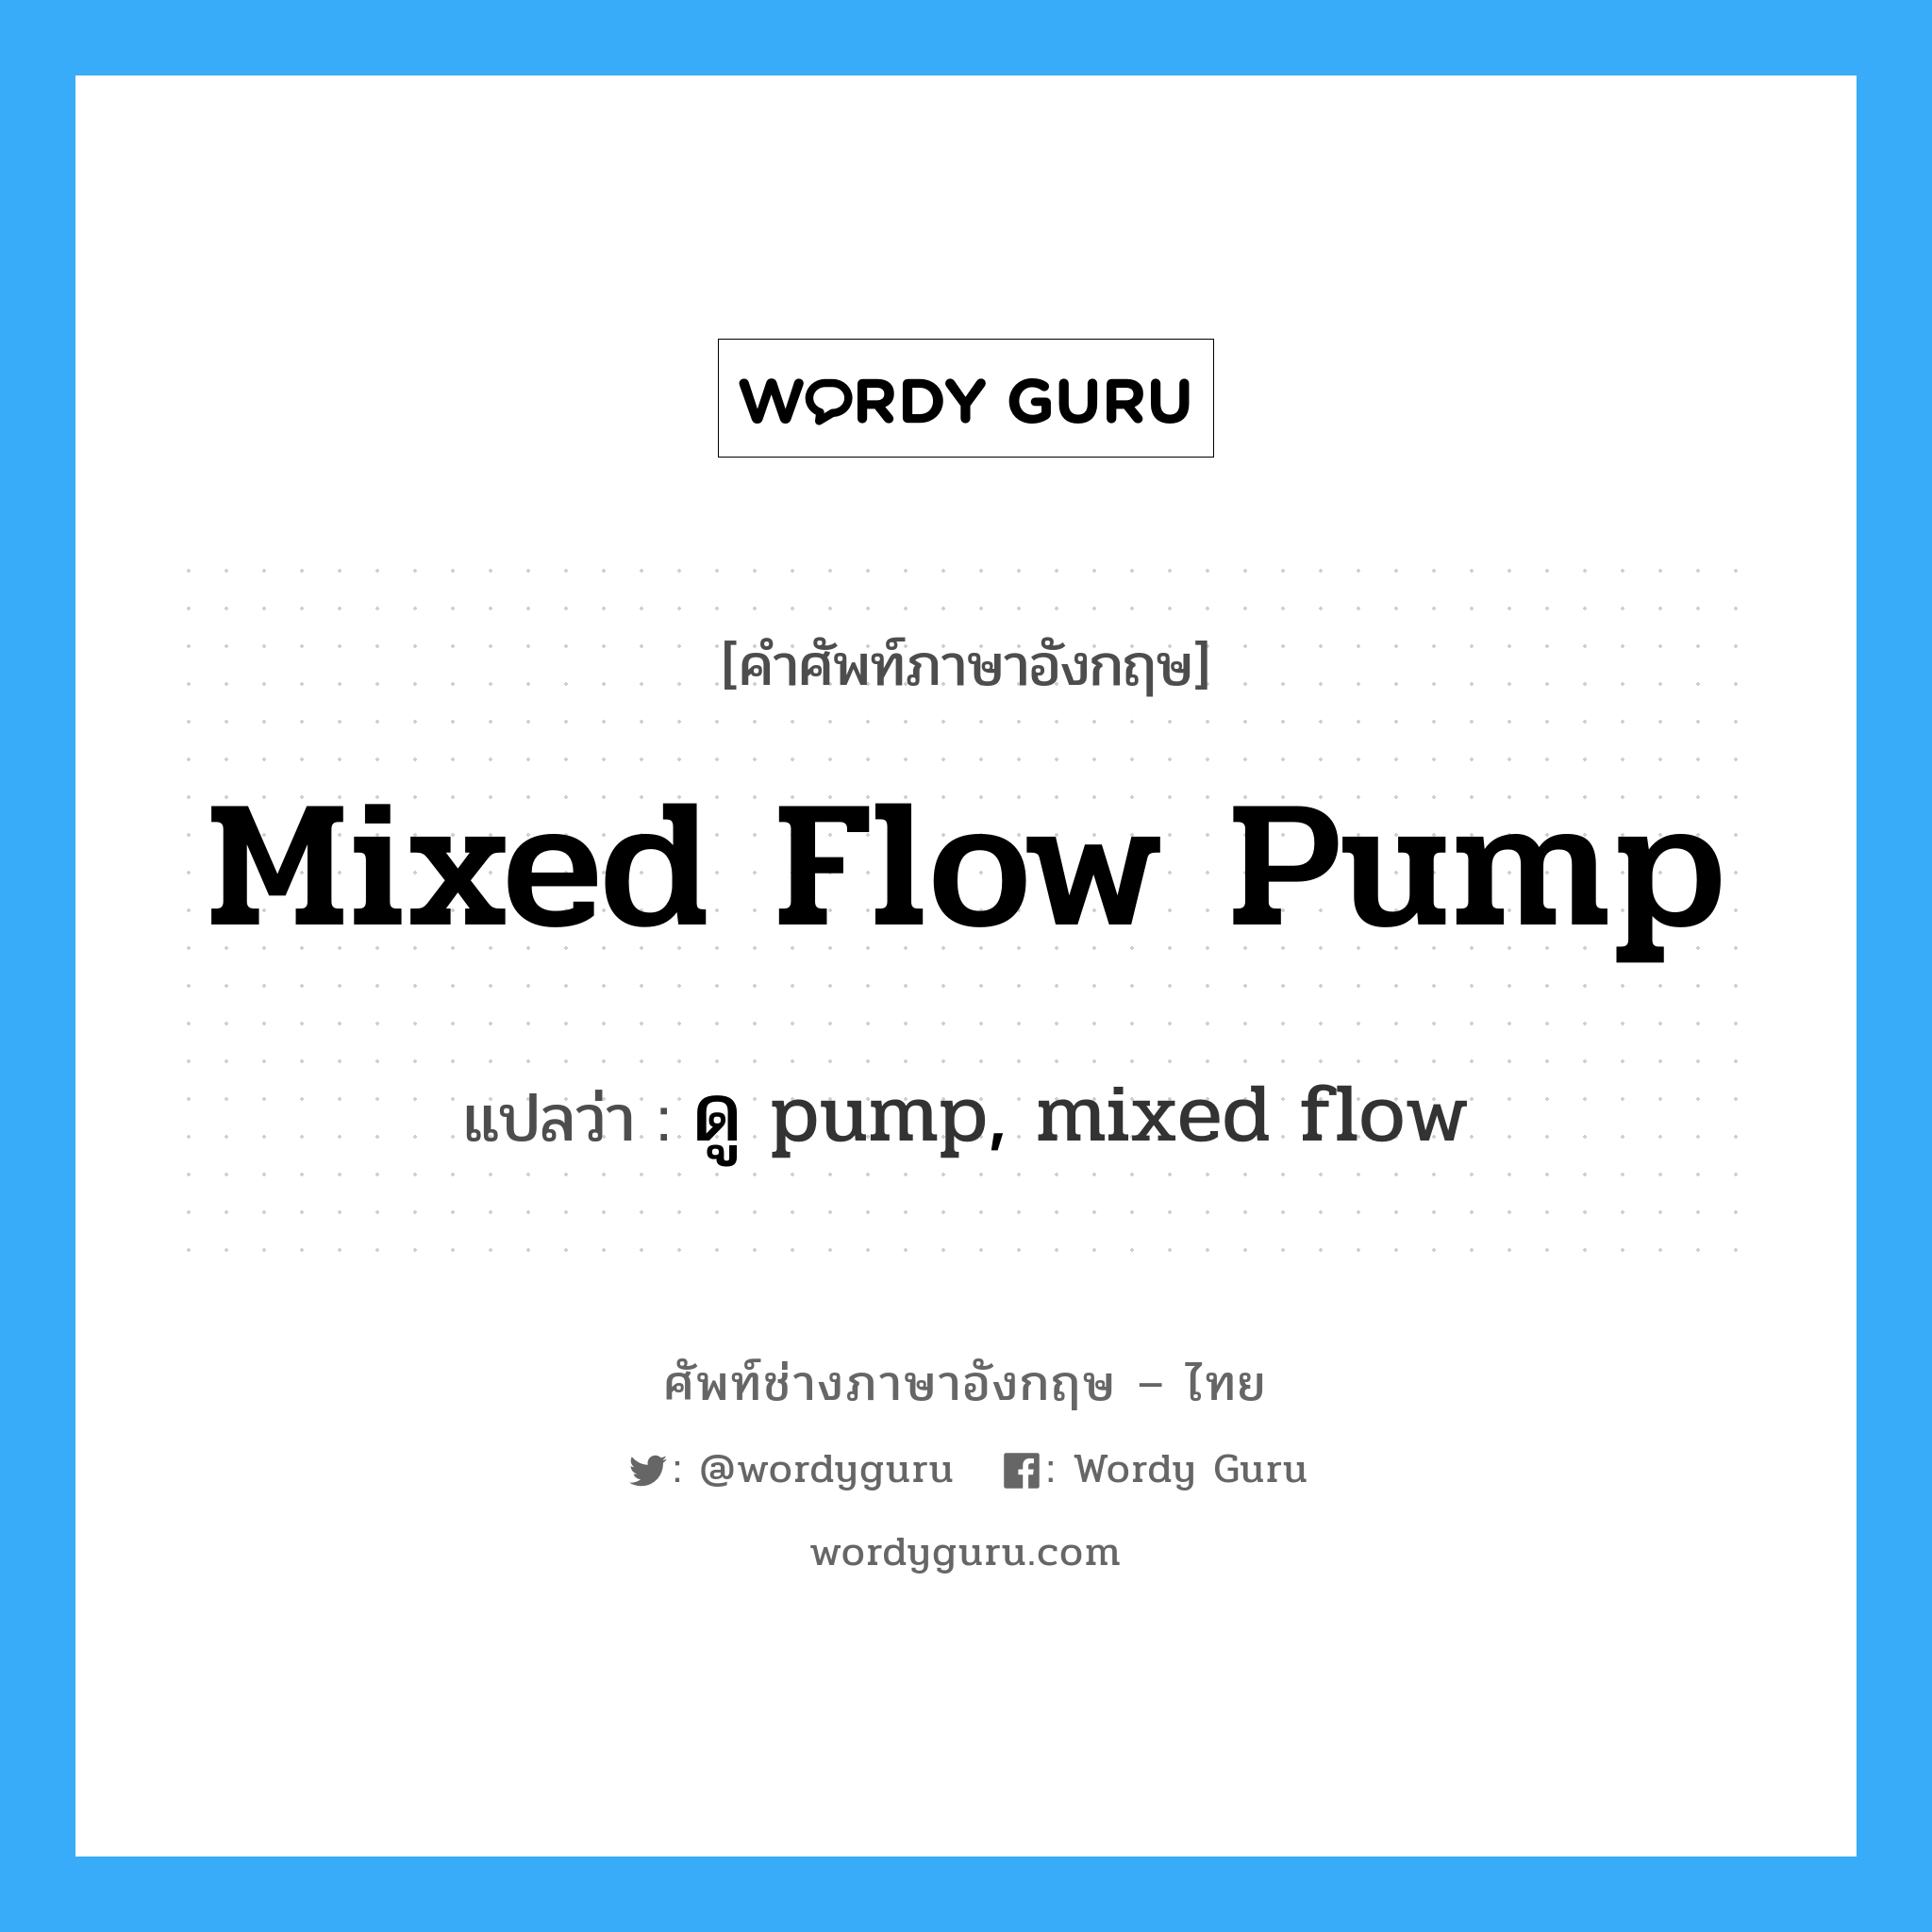 ดู pump, mixed flow ภาษาอังกฤษ?, คำศัพท์ช่างภาษาอังกฤษ - ไทย ดู pump, mixed flow คำศัพท์ภาษาอังกฤษ ดู pump, mixed flow แปลว่า mixed flow pump